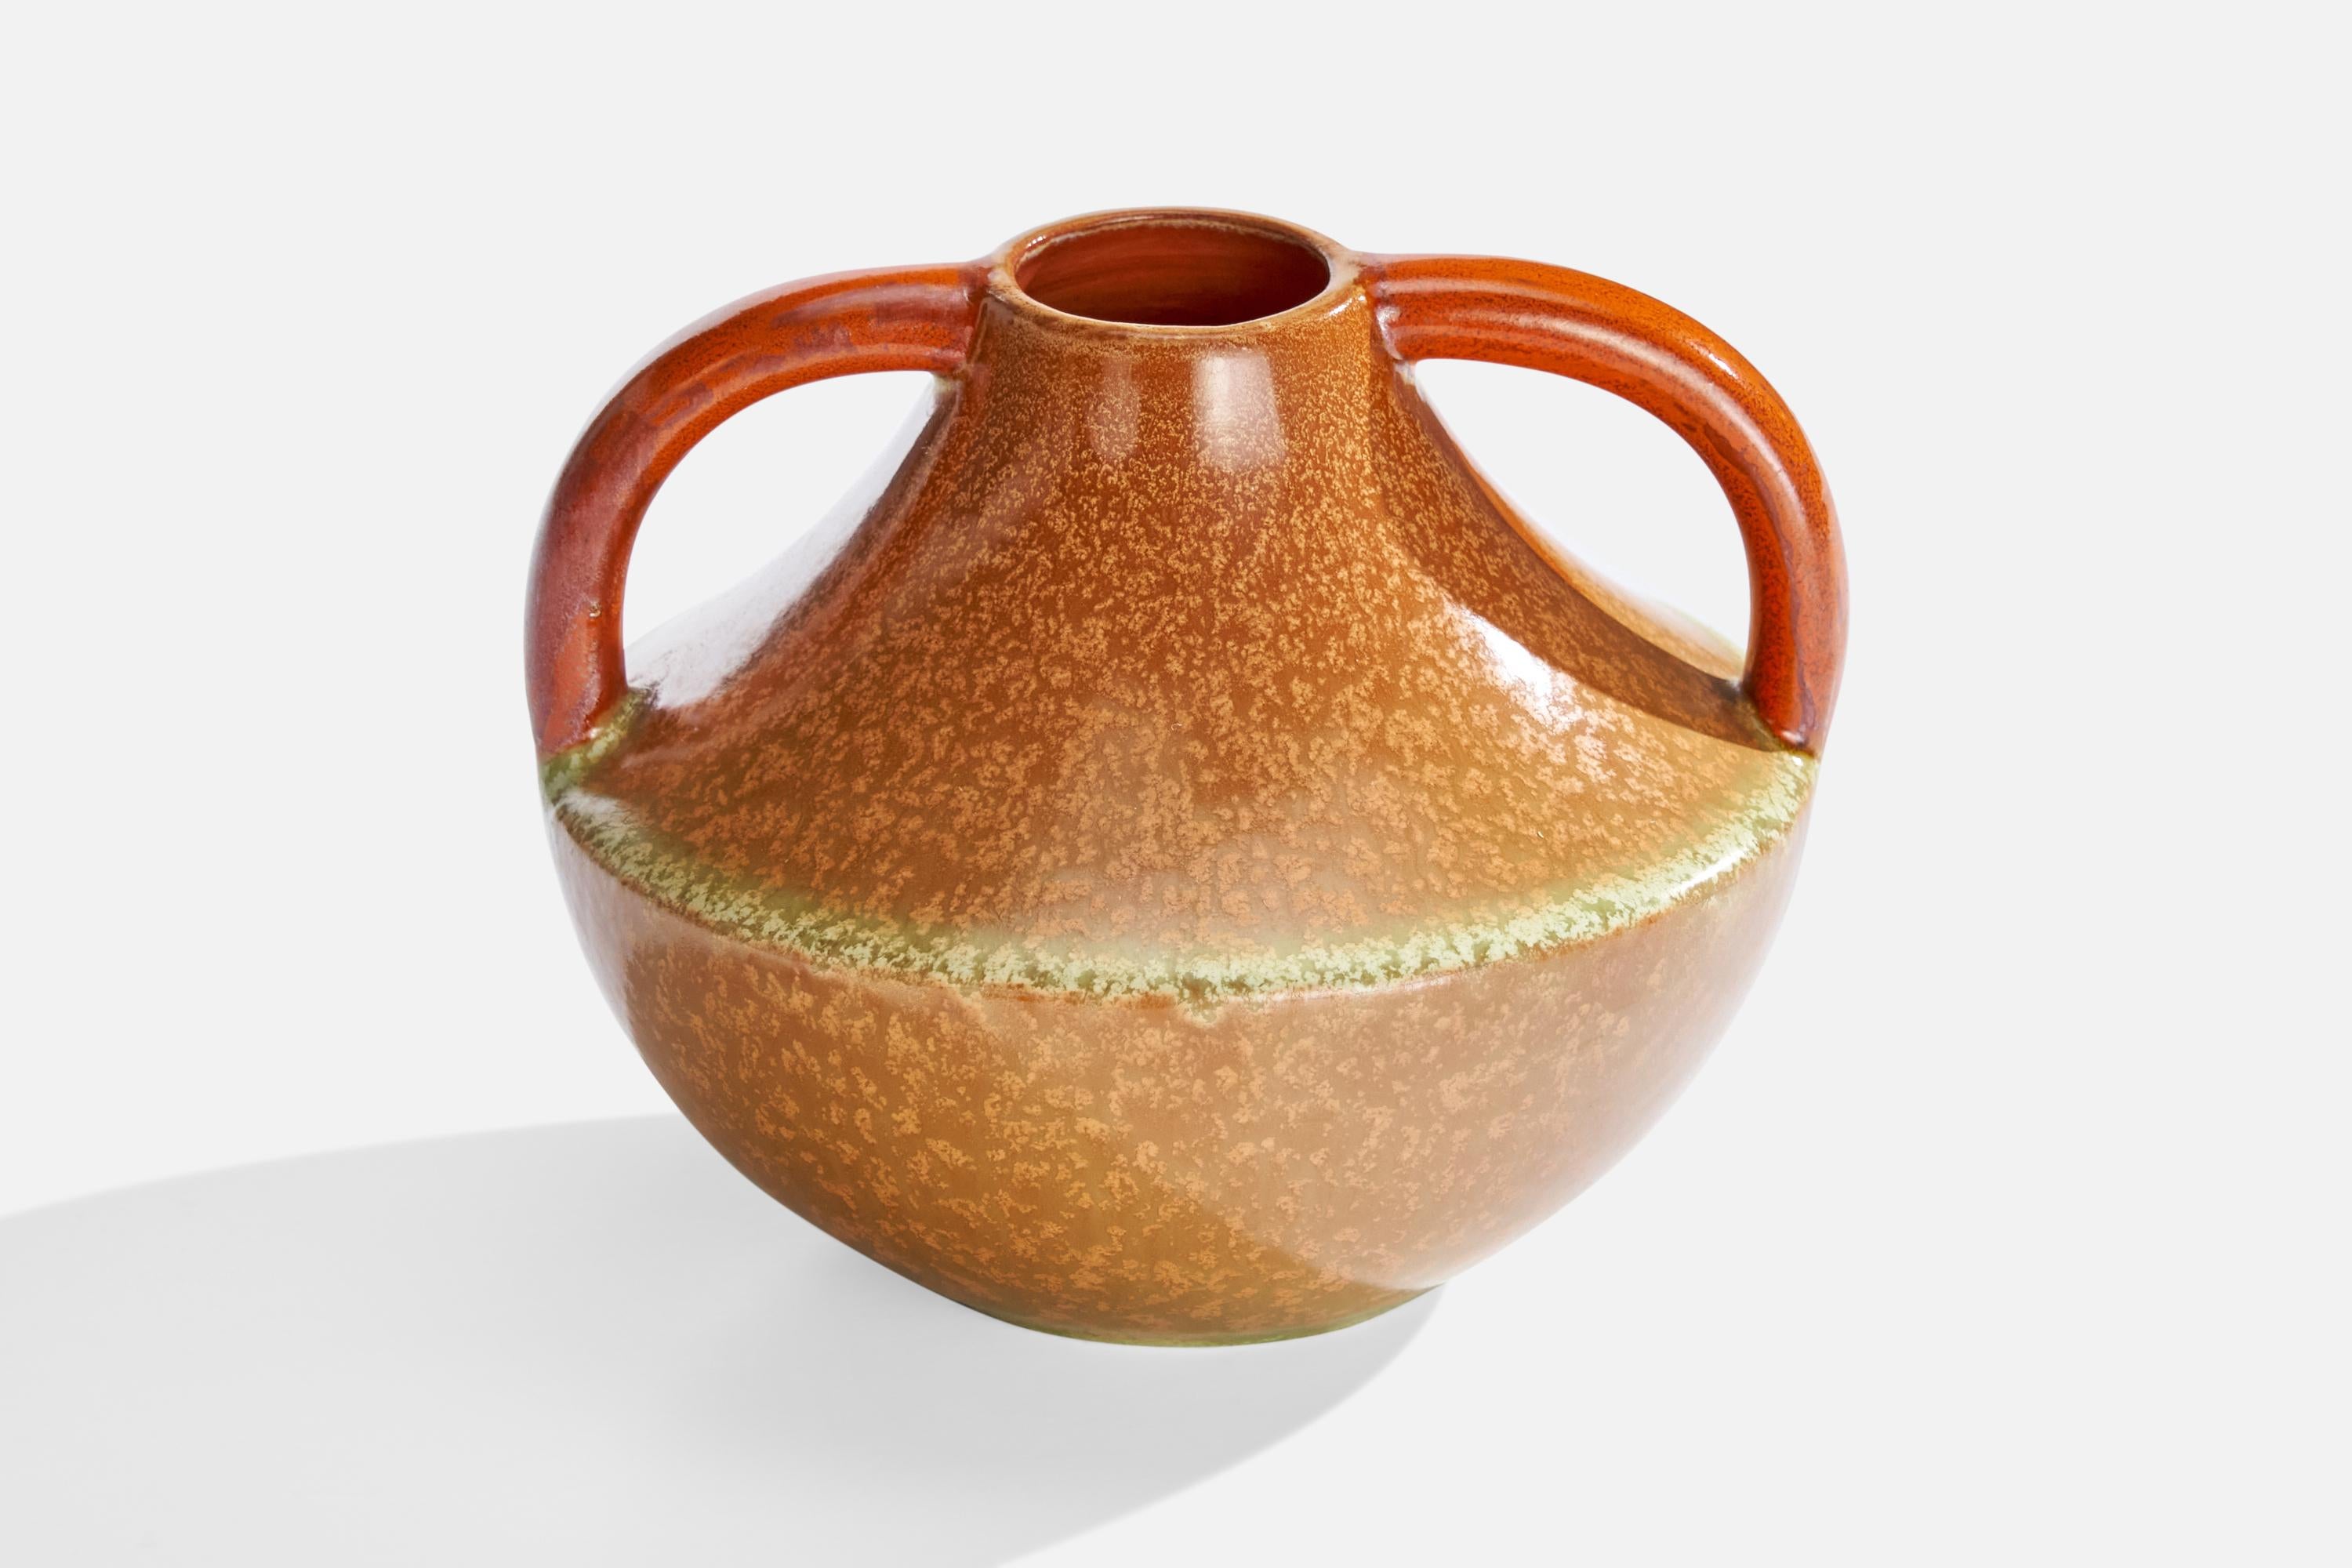 Vase en grès émaillé orange, beige et brun, conçu et produit par Andersson & Johansson, Suède, vers les années 1940.